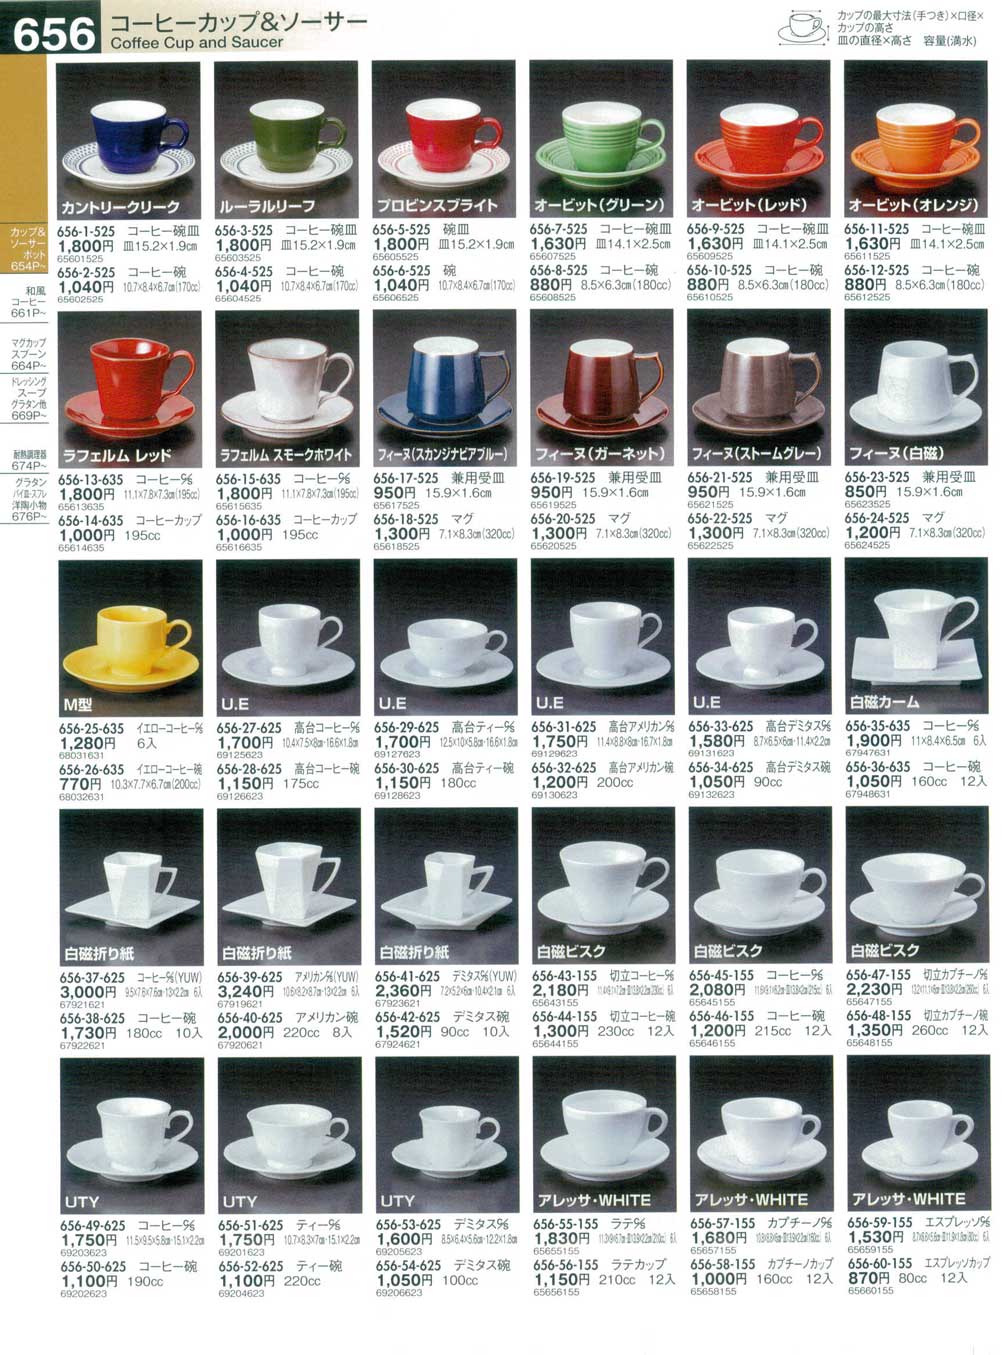 贈物 キッチン用品 食器 調理器具 陶器 ロイヤル ドゥルトン エスプリコーヒーカップとソーサー 初等品質Royal Doulton Esprit 6  X coffee cups and saucers. First Quality H5011 muhoko.org